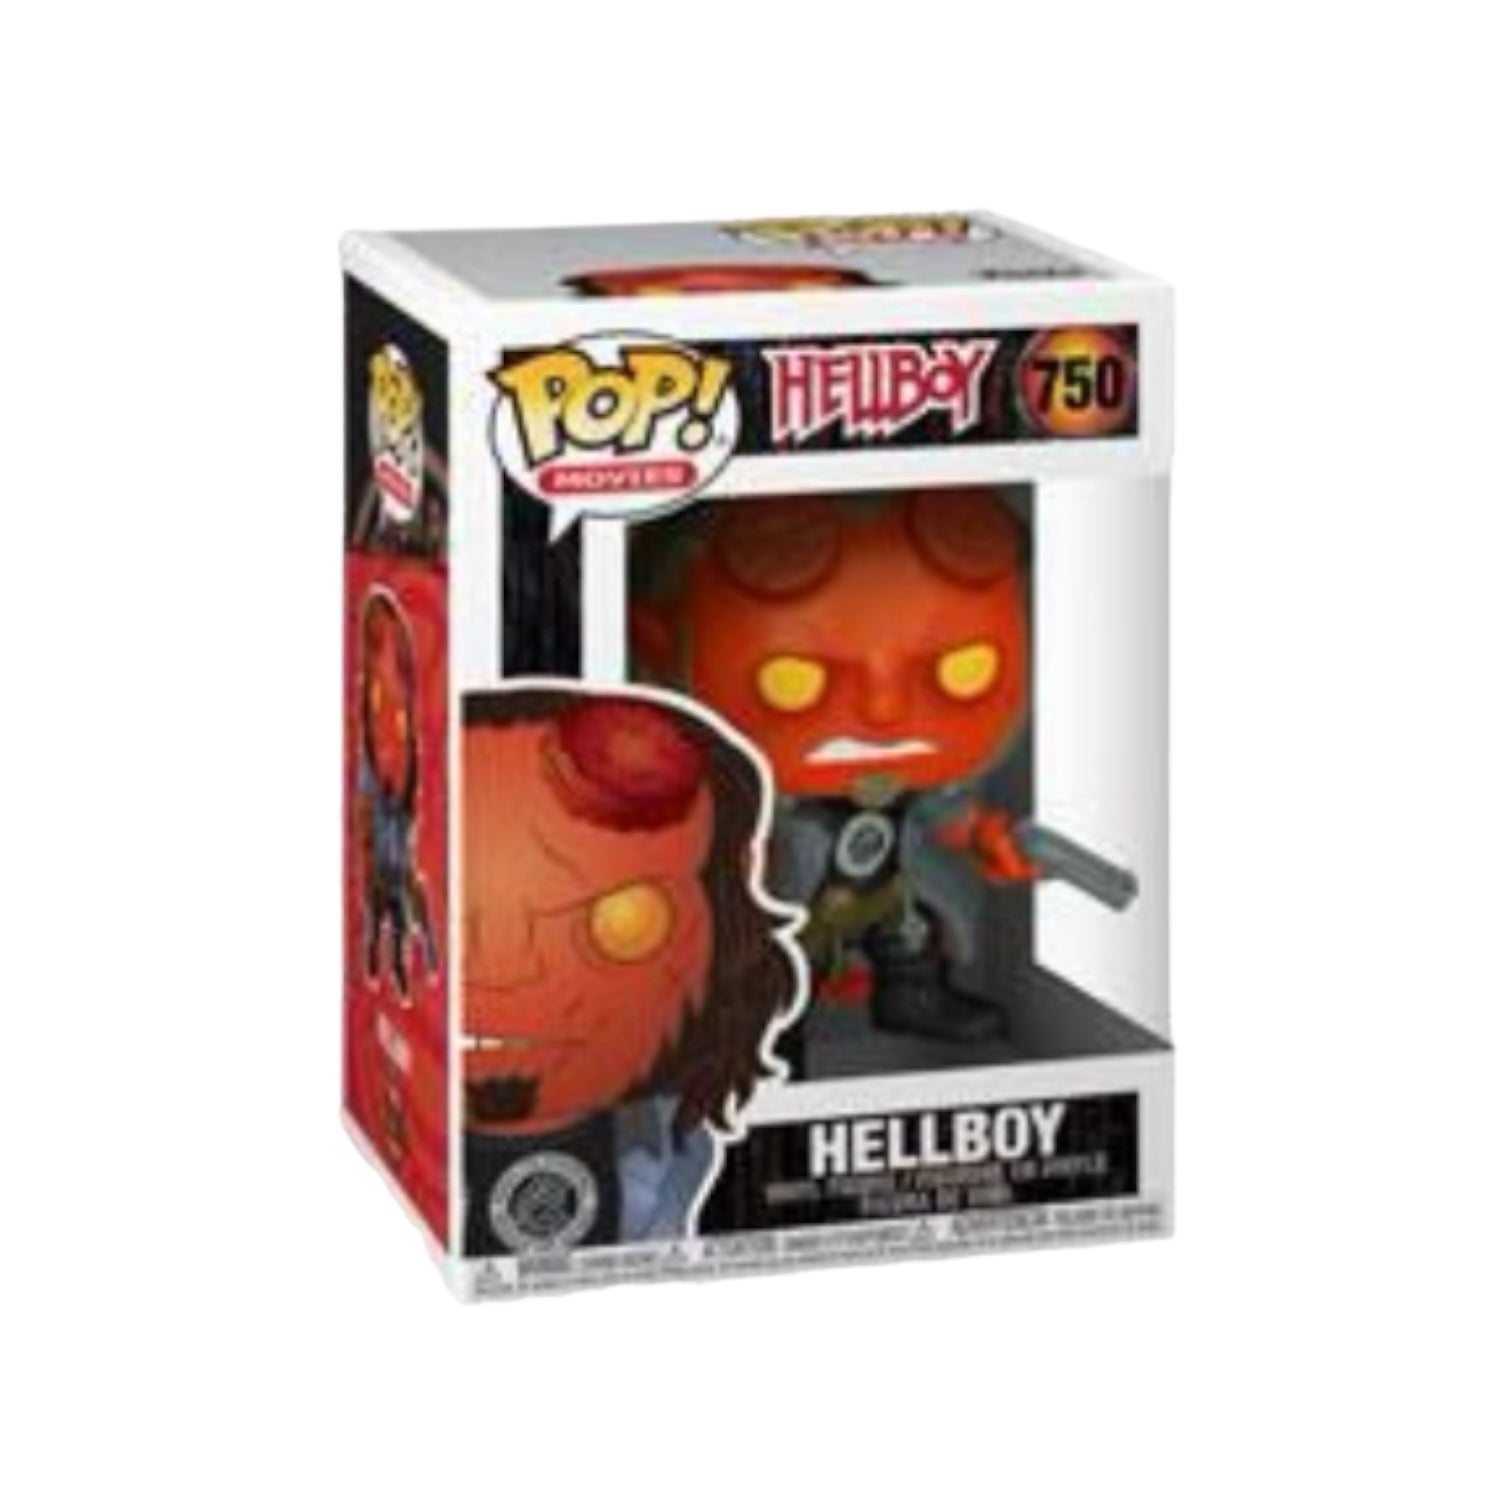 Hellboy #750 Funko Pop! - Hellboy